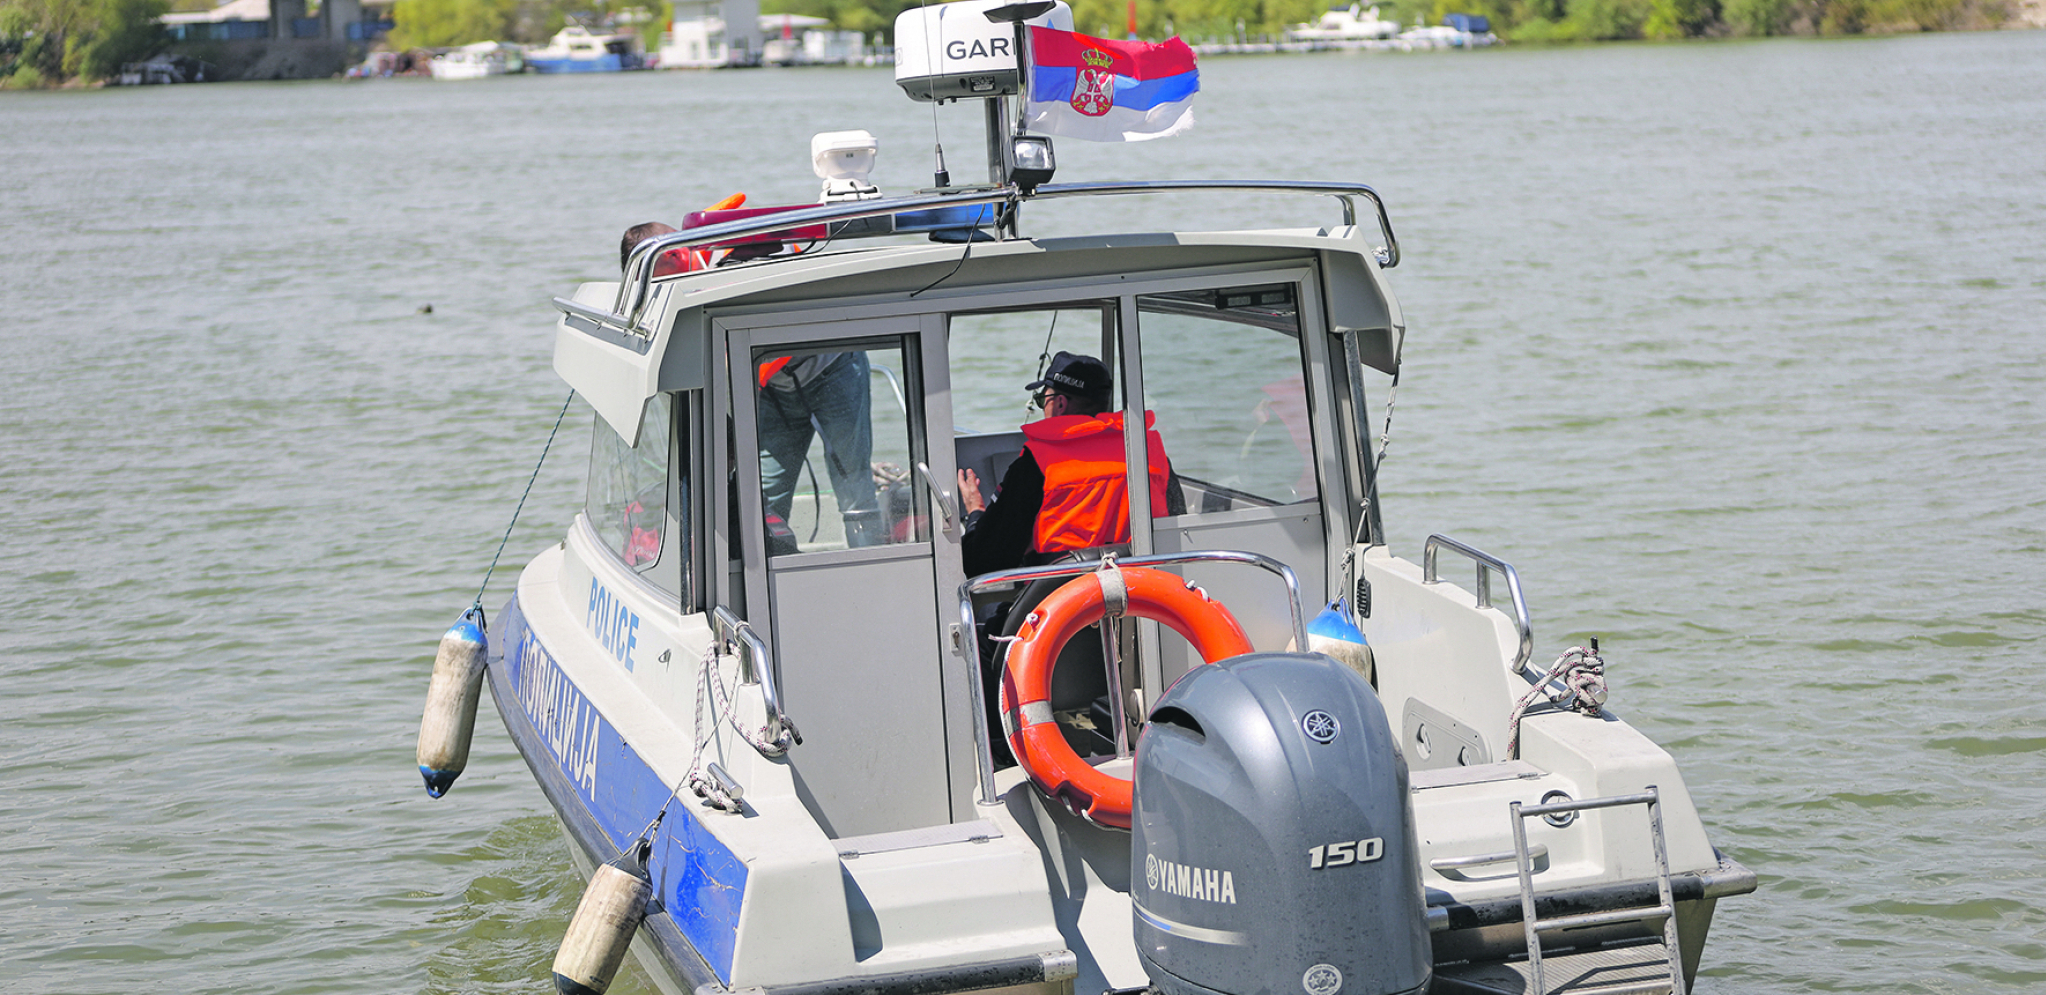 BRZA AKCIJA REČNE POLICIJE Našli nelegalnu naftu u čamcu